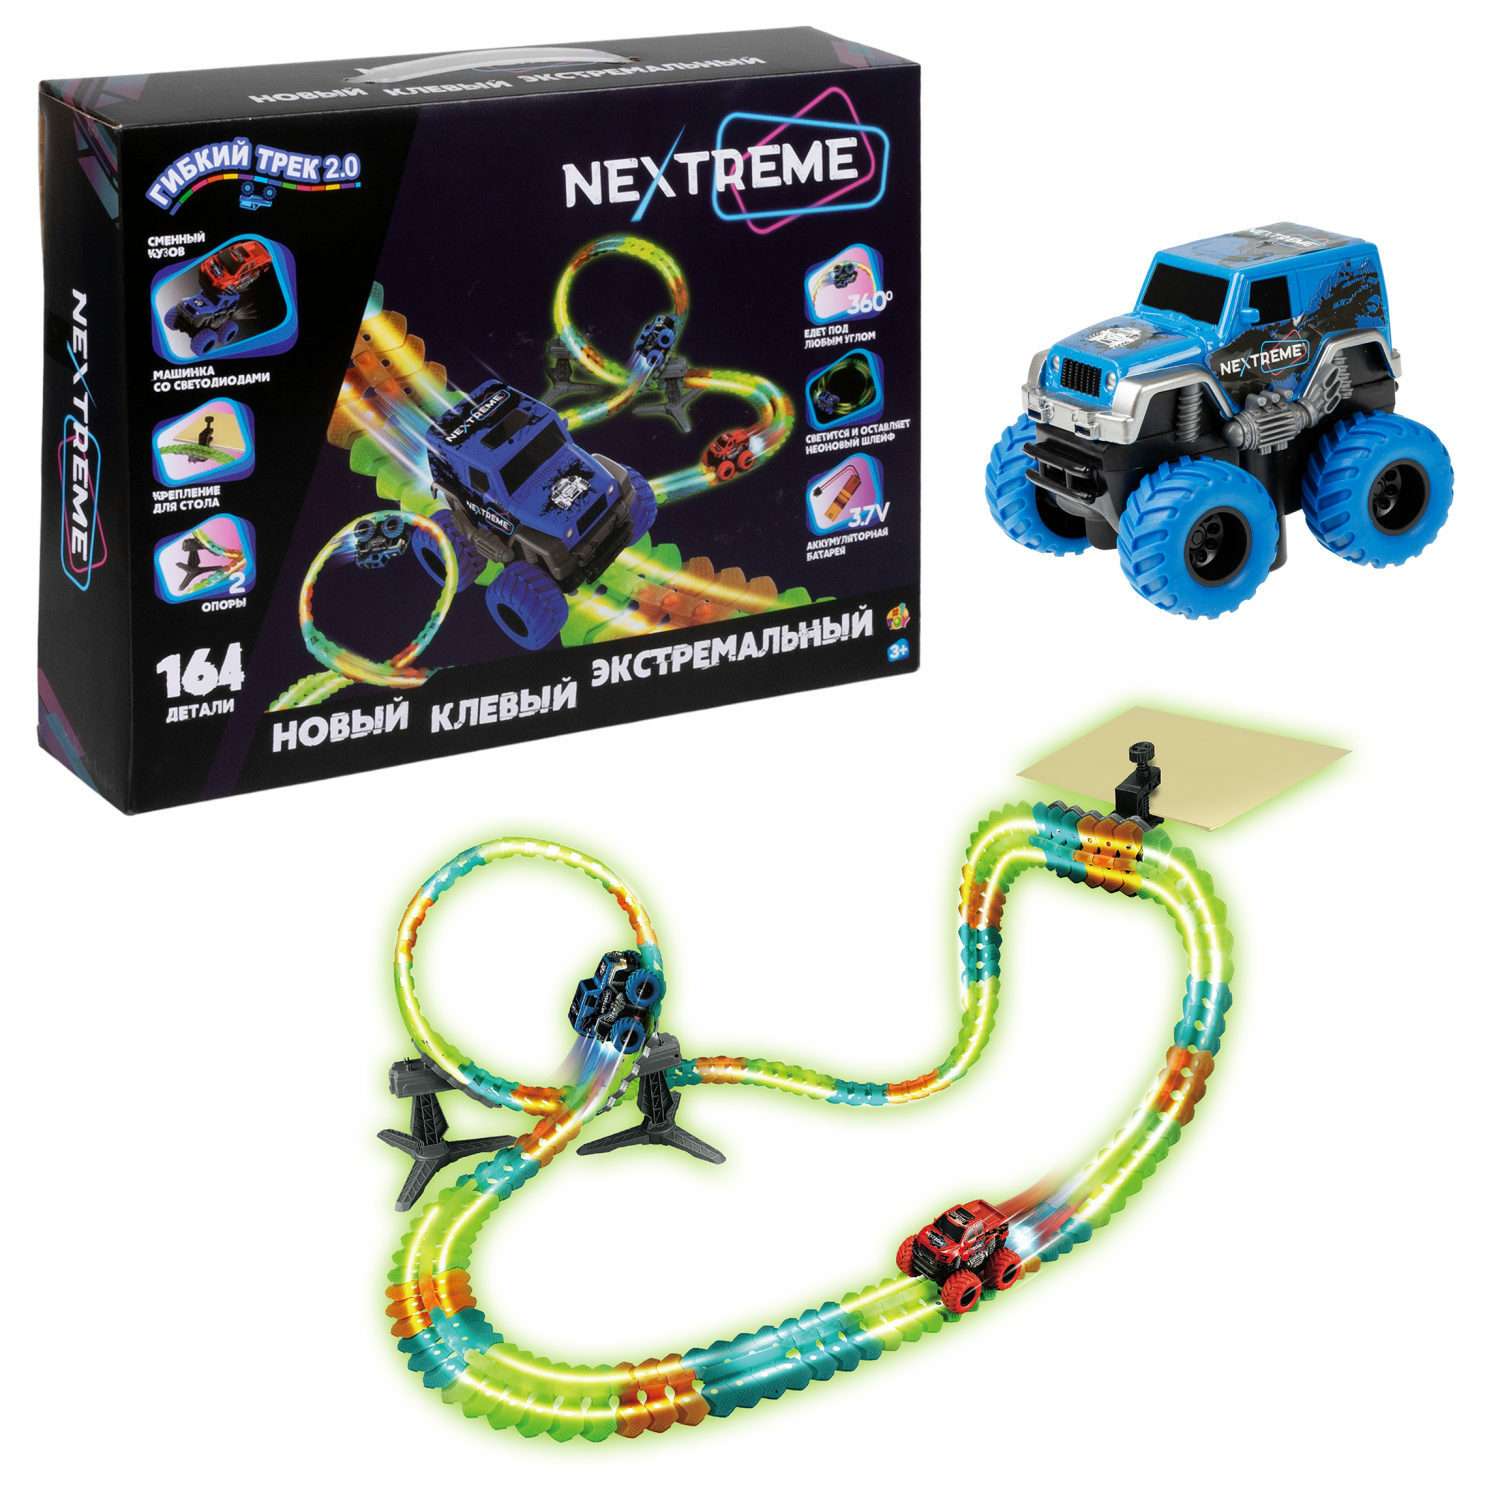 Гибкий трек с машинкой 1TOY Nextreme светящийся гоночная трасса дорога автотрек игрушки для мальчиков 164 детали Т23874 - фото 2